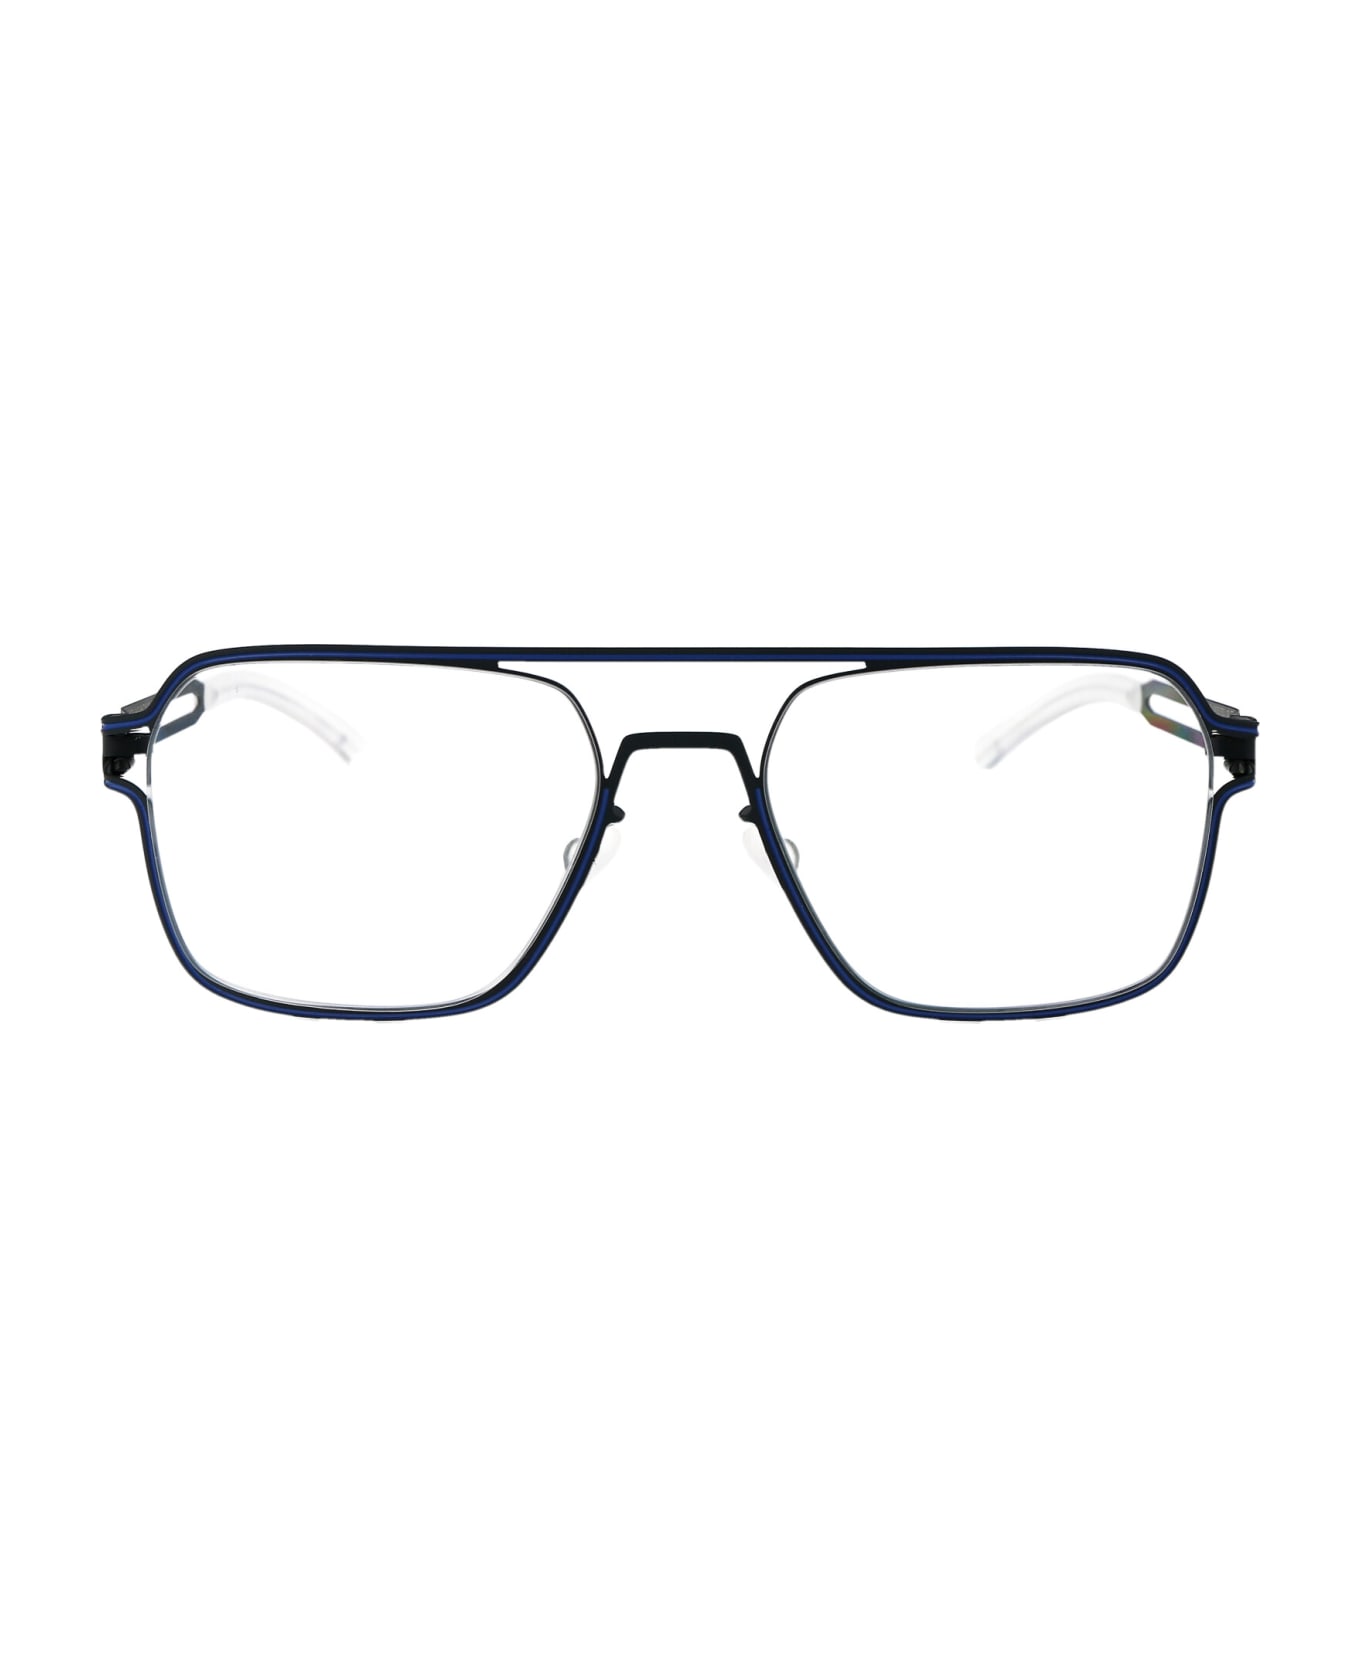 Mykita Jalo Glasses - 514 Indigo/Yale Blue Clear アイウェア